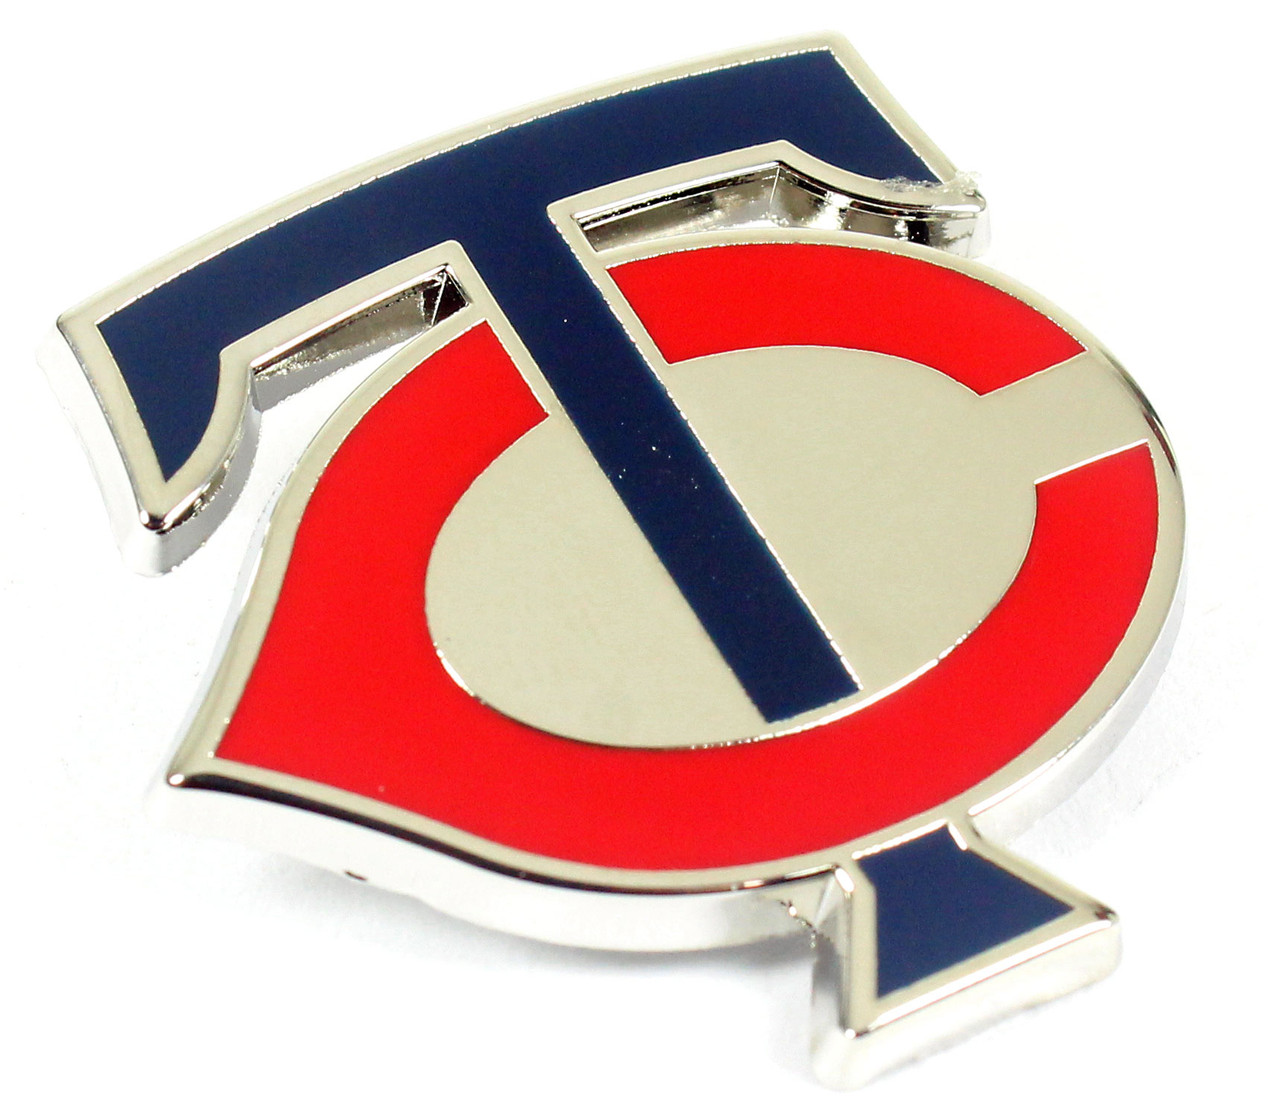 Pin on sports logos